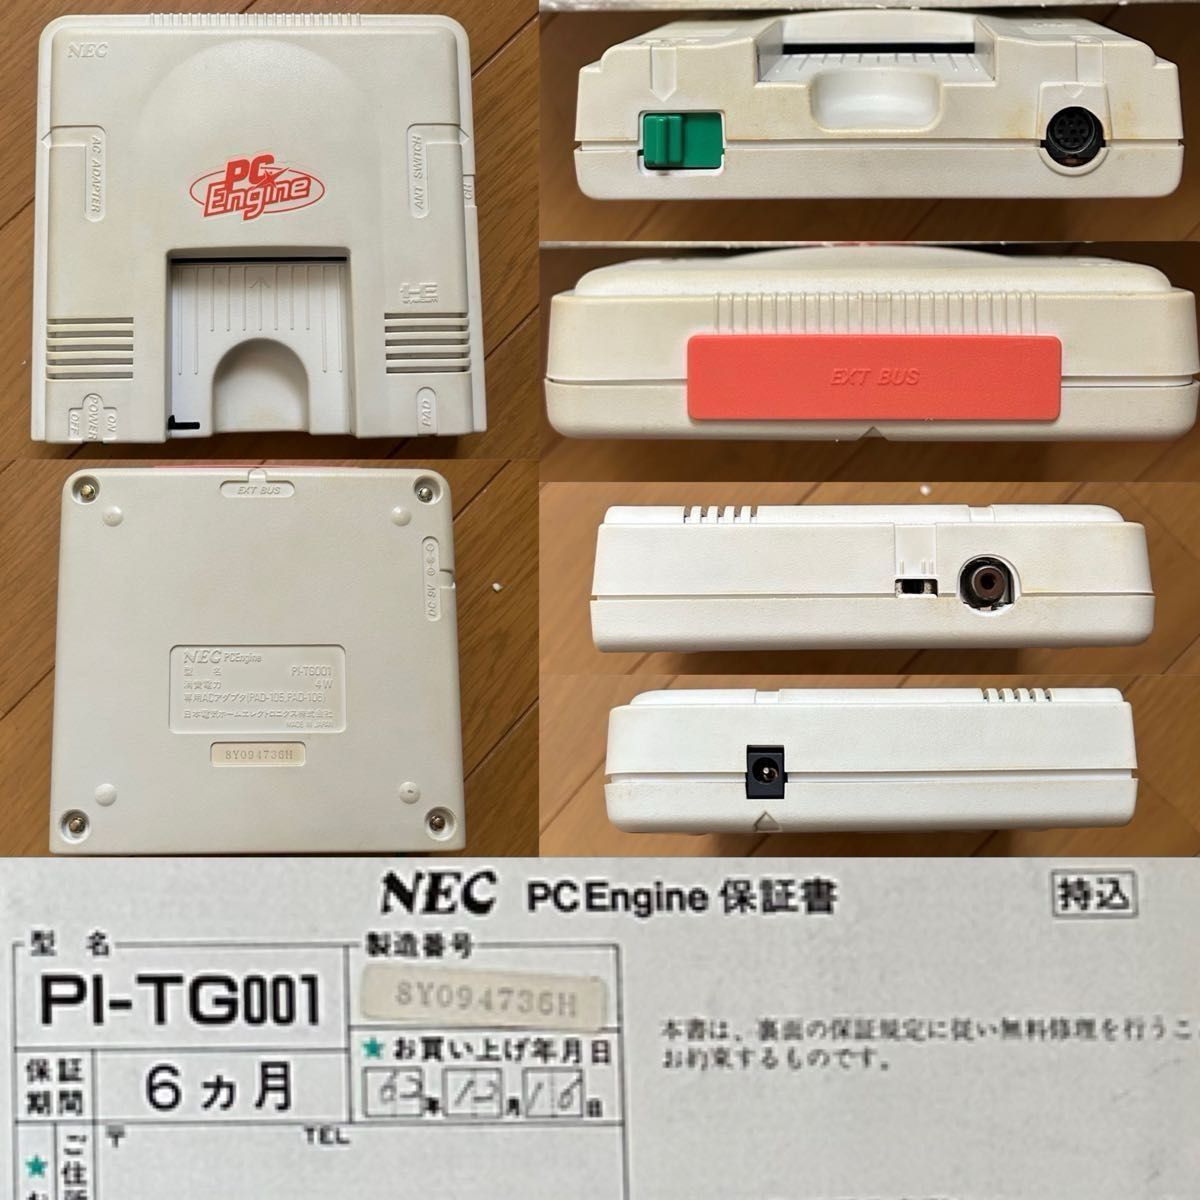 【中古】NEC 初代PCエンジン+連射付コントローラ + HUDSON  SOFTハドソン ジョイタップ3